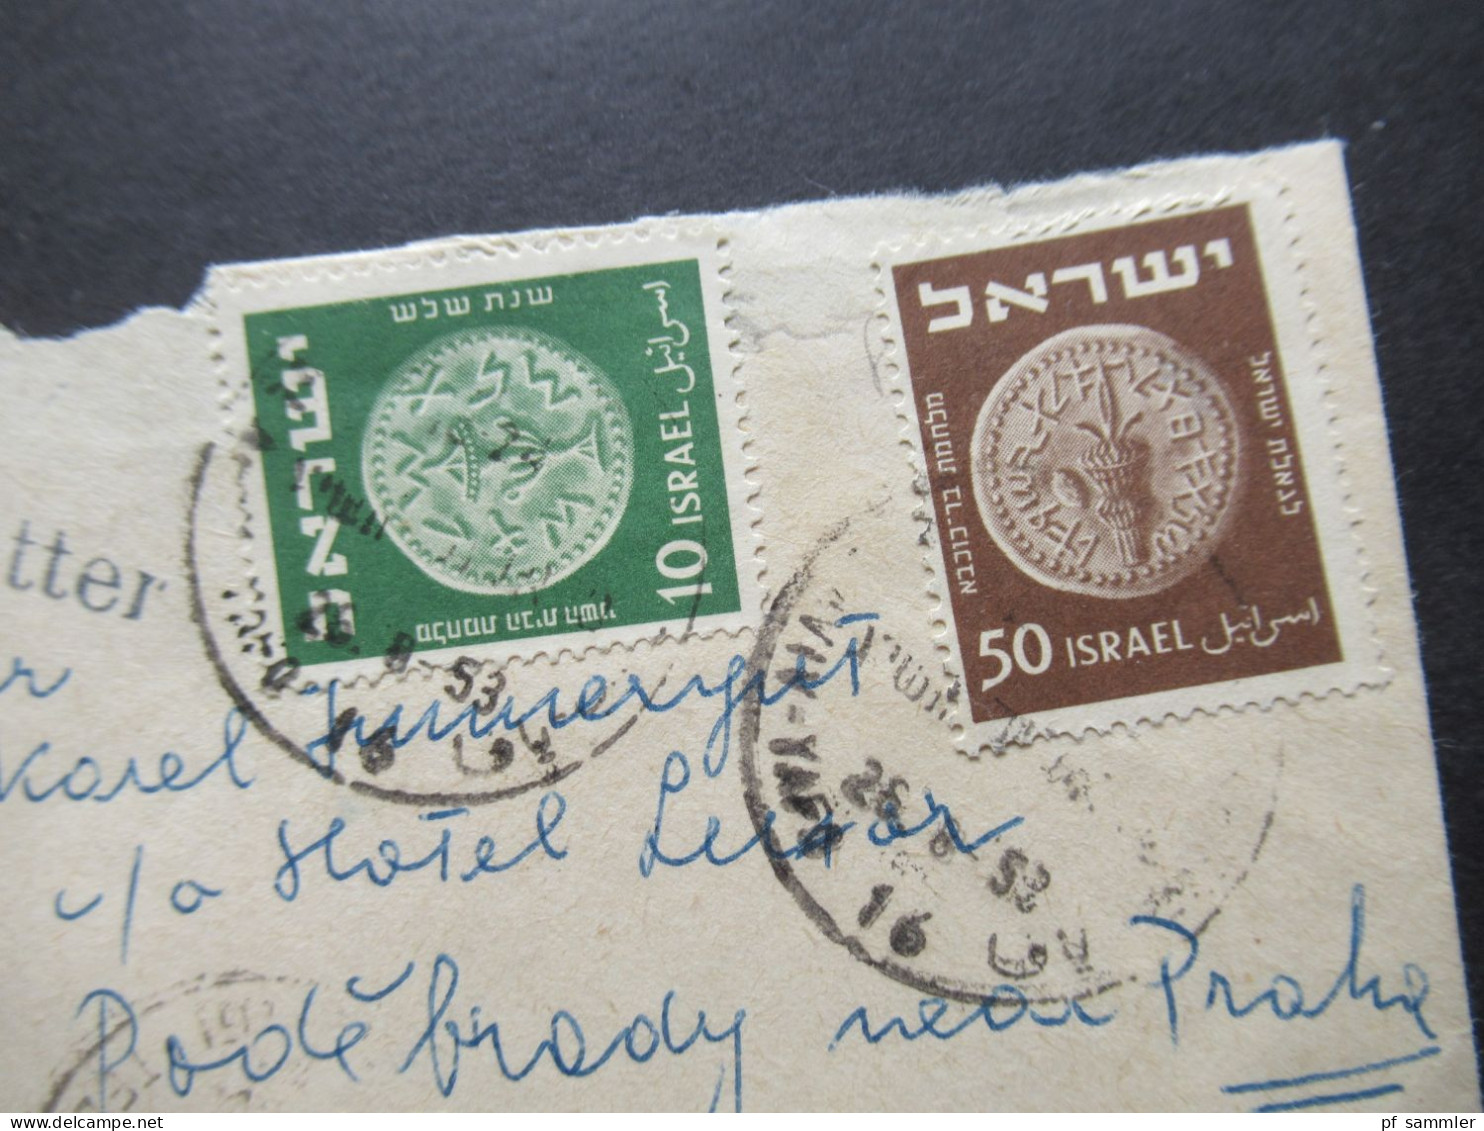 Israel 1953 By Air Mail / Luftpost In Die CSR Stempel L1 Printed Matter / Kleiner Umschlag - Brieven En Documenten